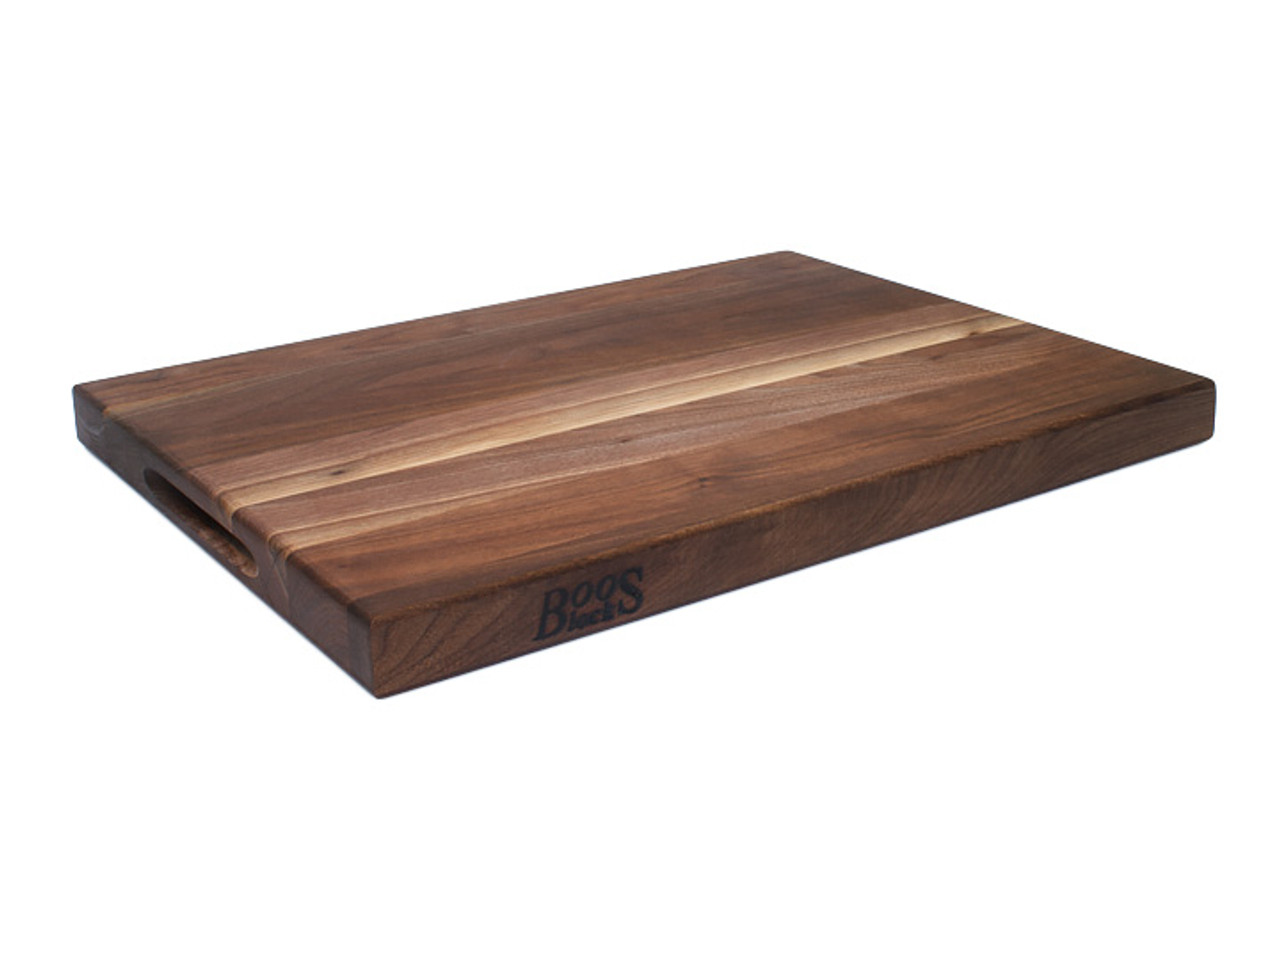 John Boos Small Walnut Wood Cutting Board for Kitchen, 9 x 9 x 1.5